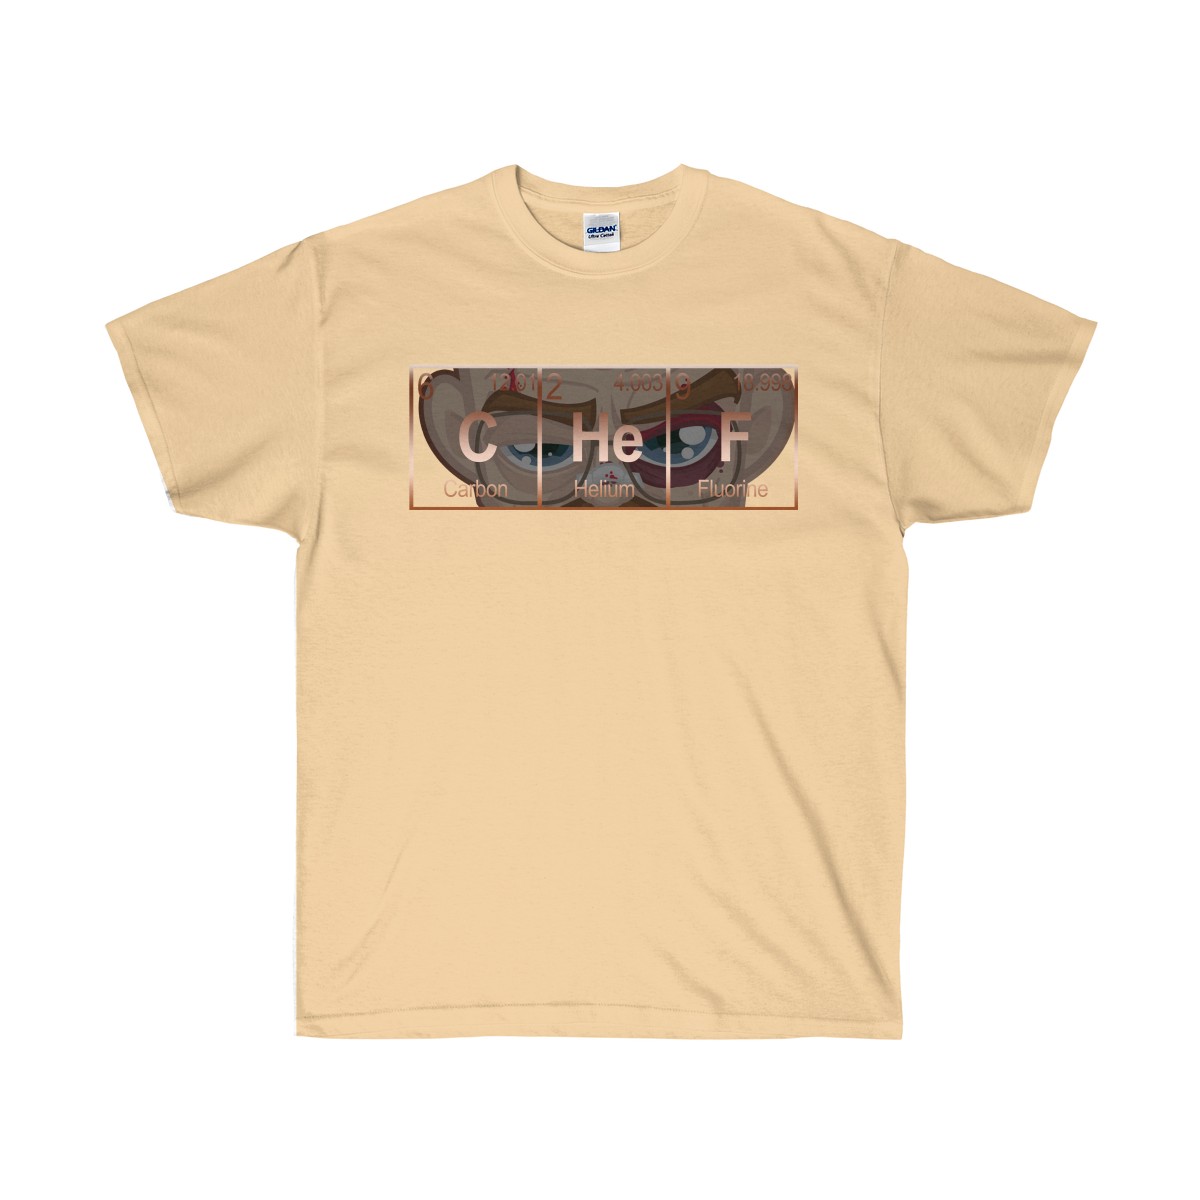 Copper Foamposite Elemental CHeF Sneaker ColorwayMatch T-Shirt